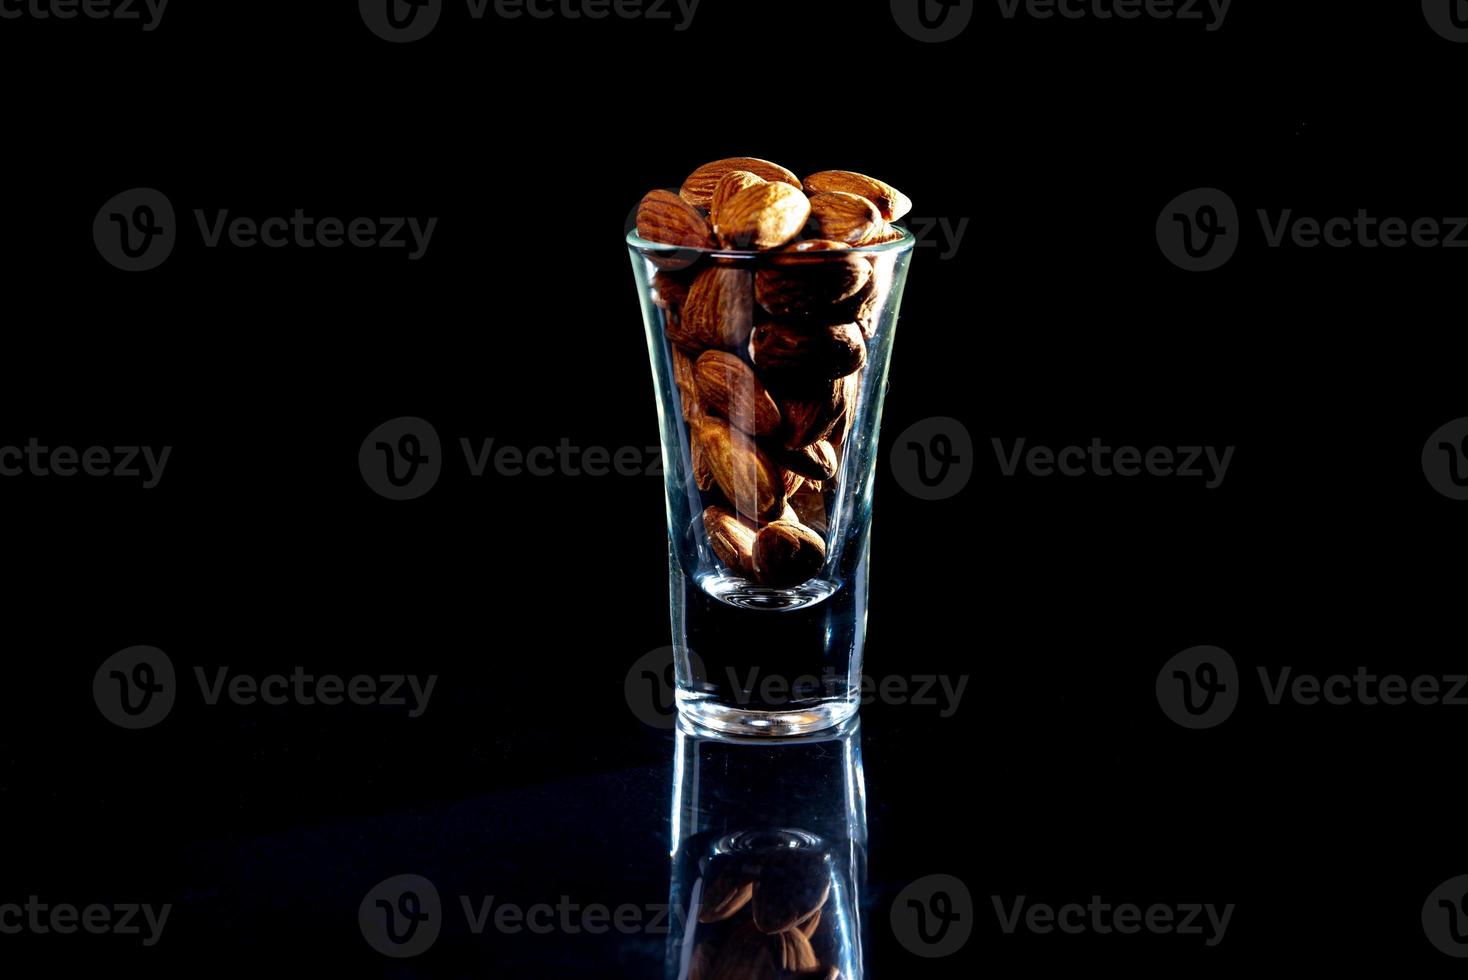 geschälte Mandeln im Weinglas-Eimer auf schwarzem, isoliertem Hintergrund. Reihe von Schalen mit Mandelnüssen, Vorderansicht. foto